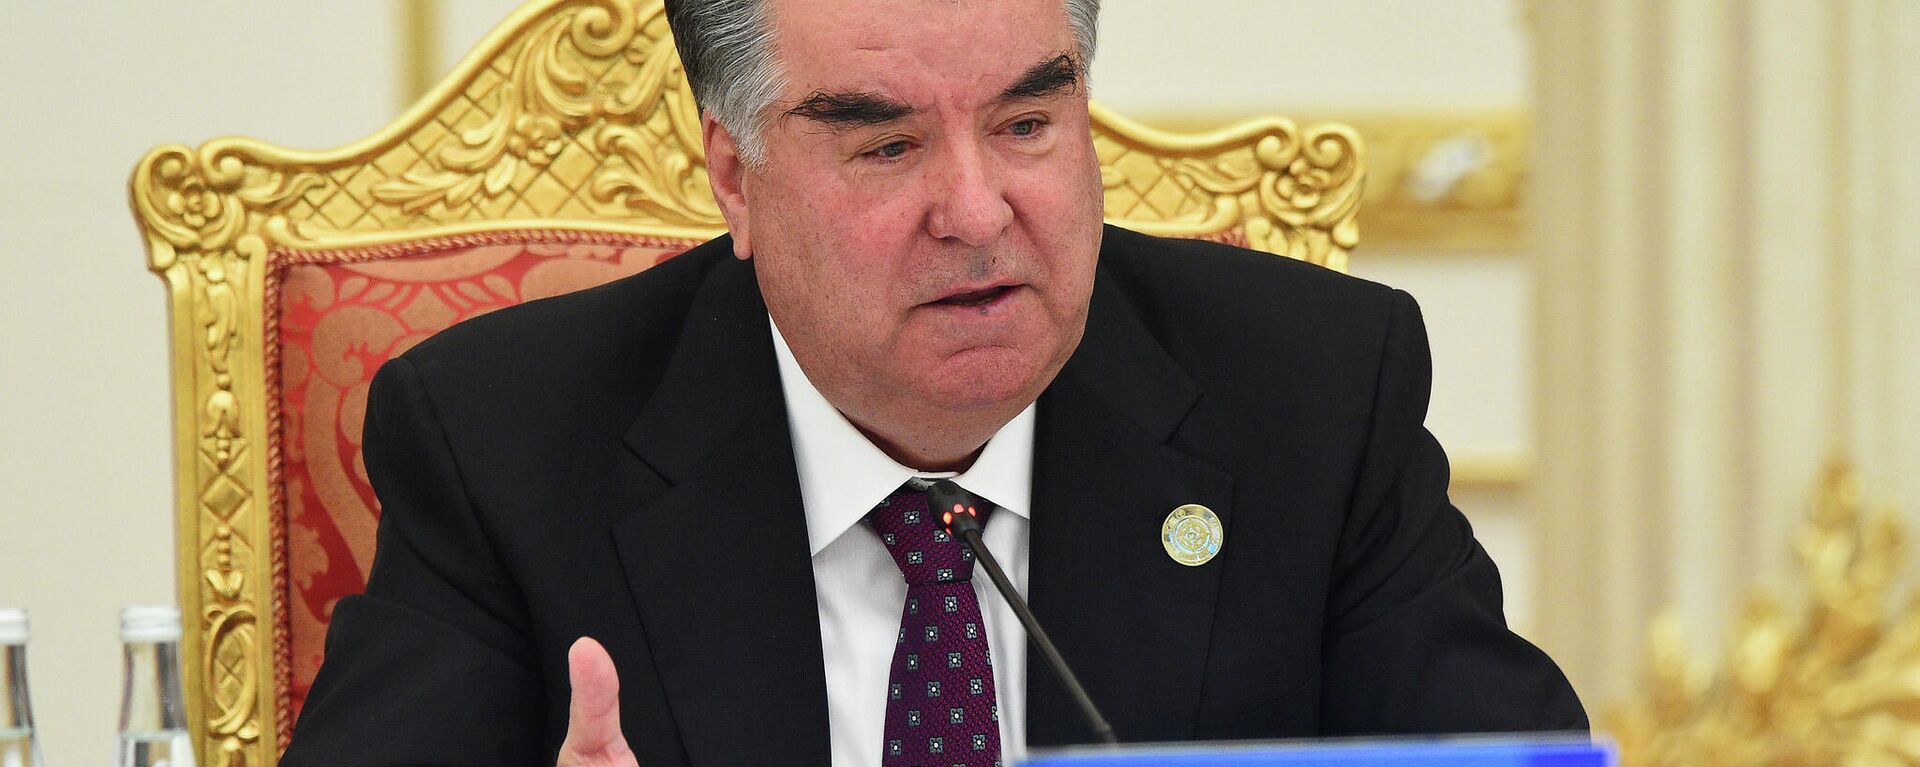 Президент Таджикистана Эмомали Рахмон - Sputnik Тоҷикистон, 1920, 17.09.2021